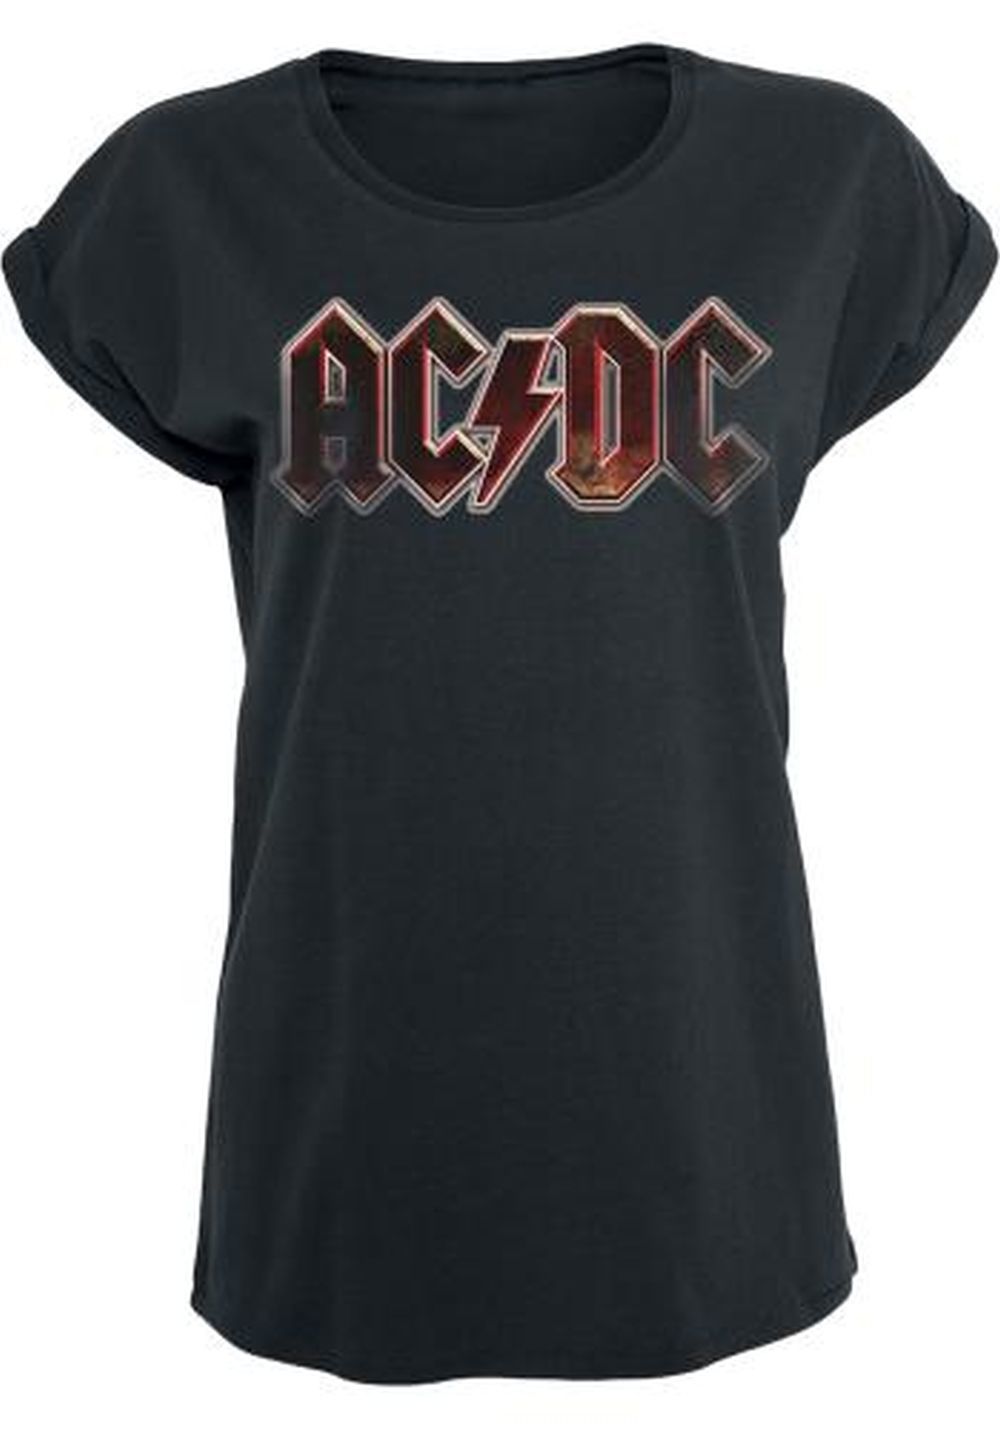 Camiseta AC/DC de venta en emp-online.es (17,99 euros).